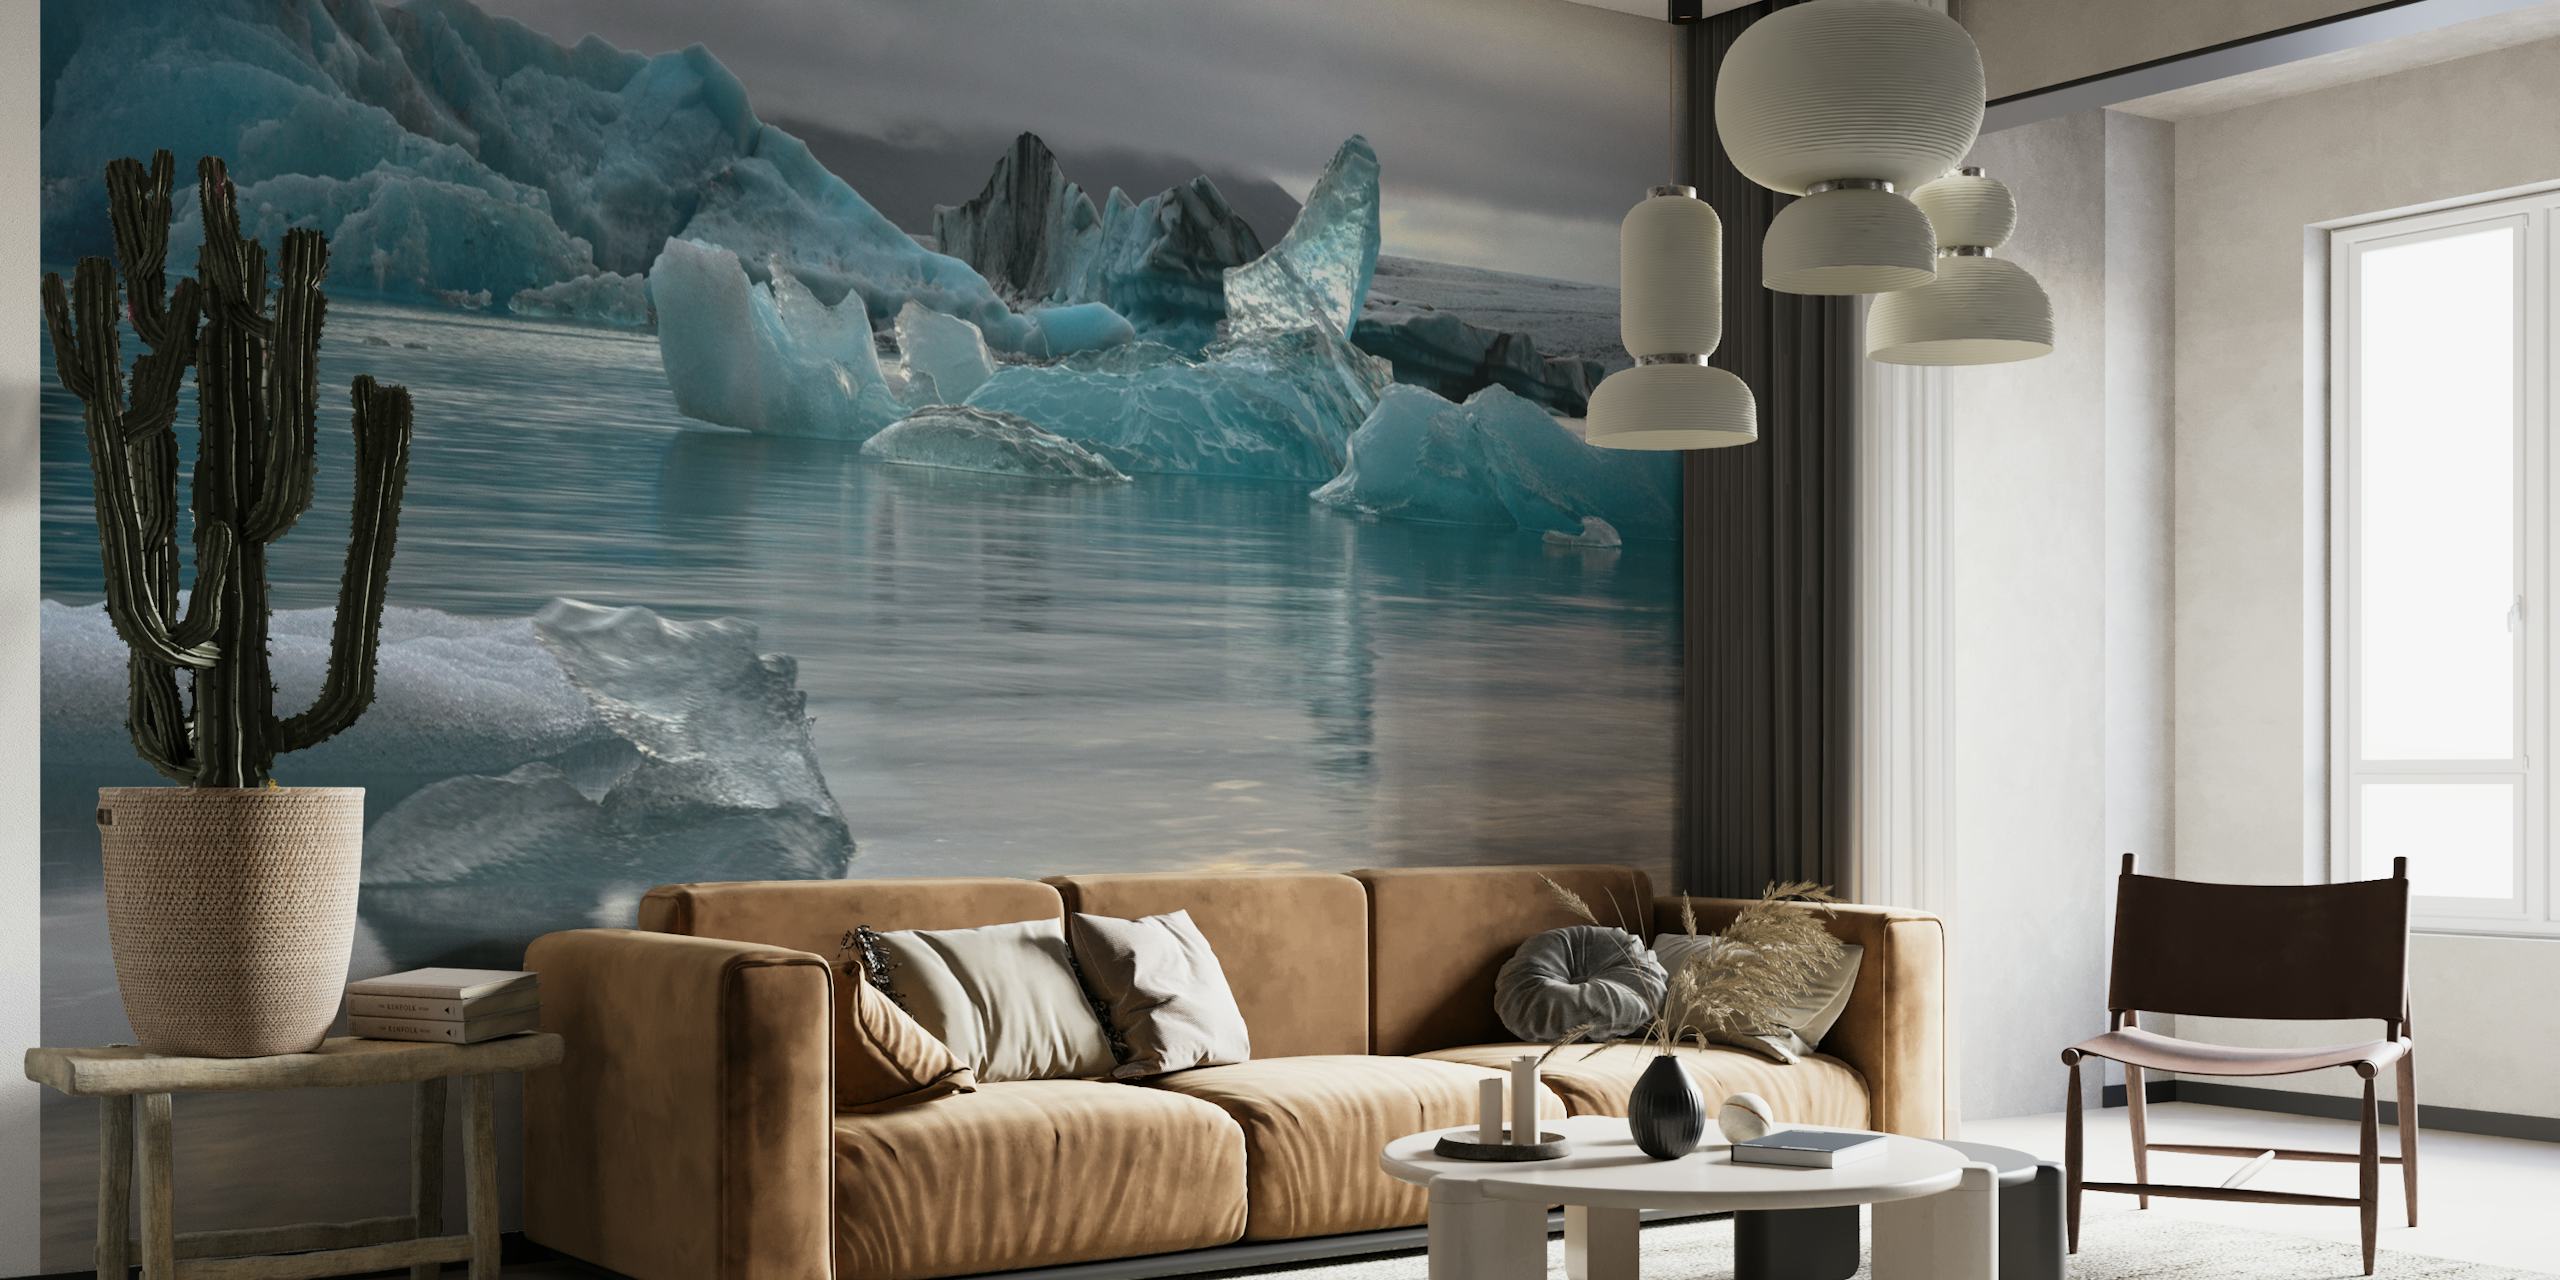 Eisberg-Wandbild mit ruhigem Wasser, in dem sich ein sanfter Himmel spiegelt